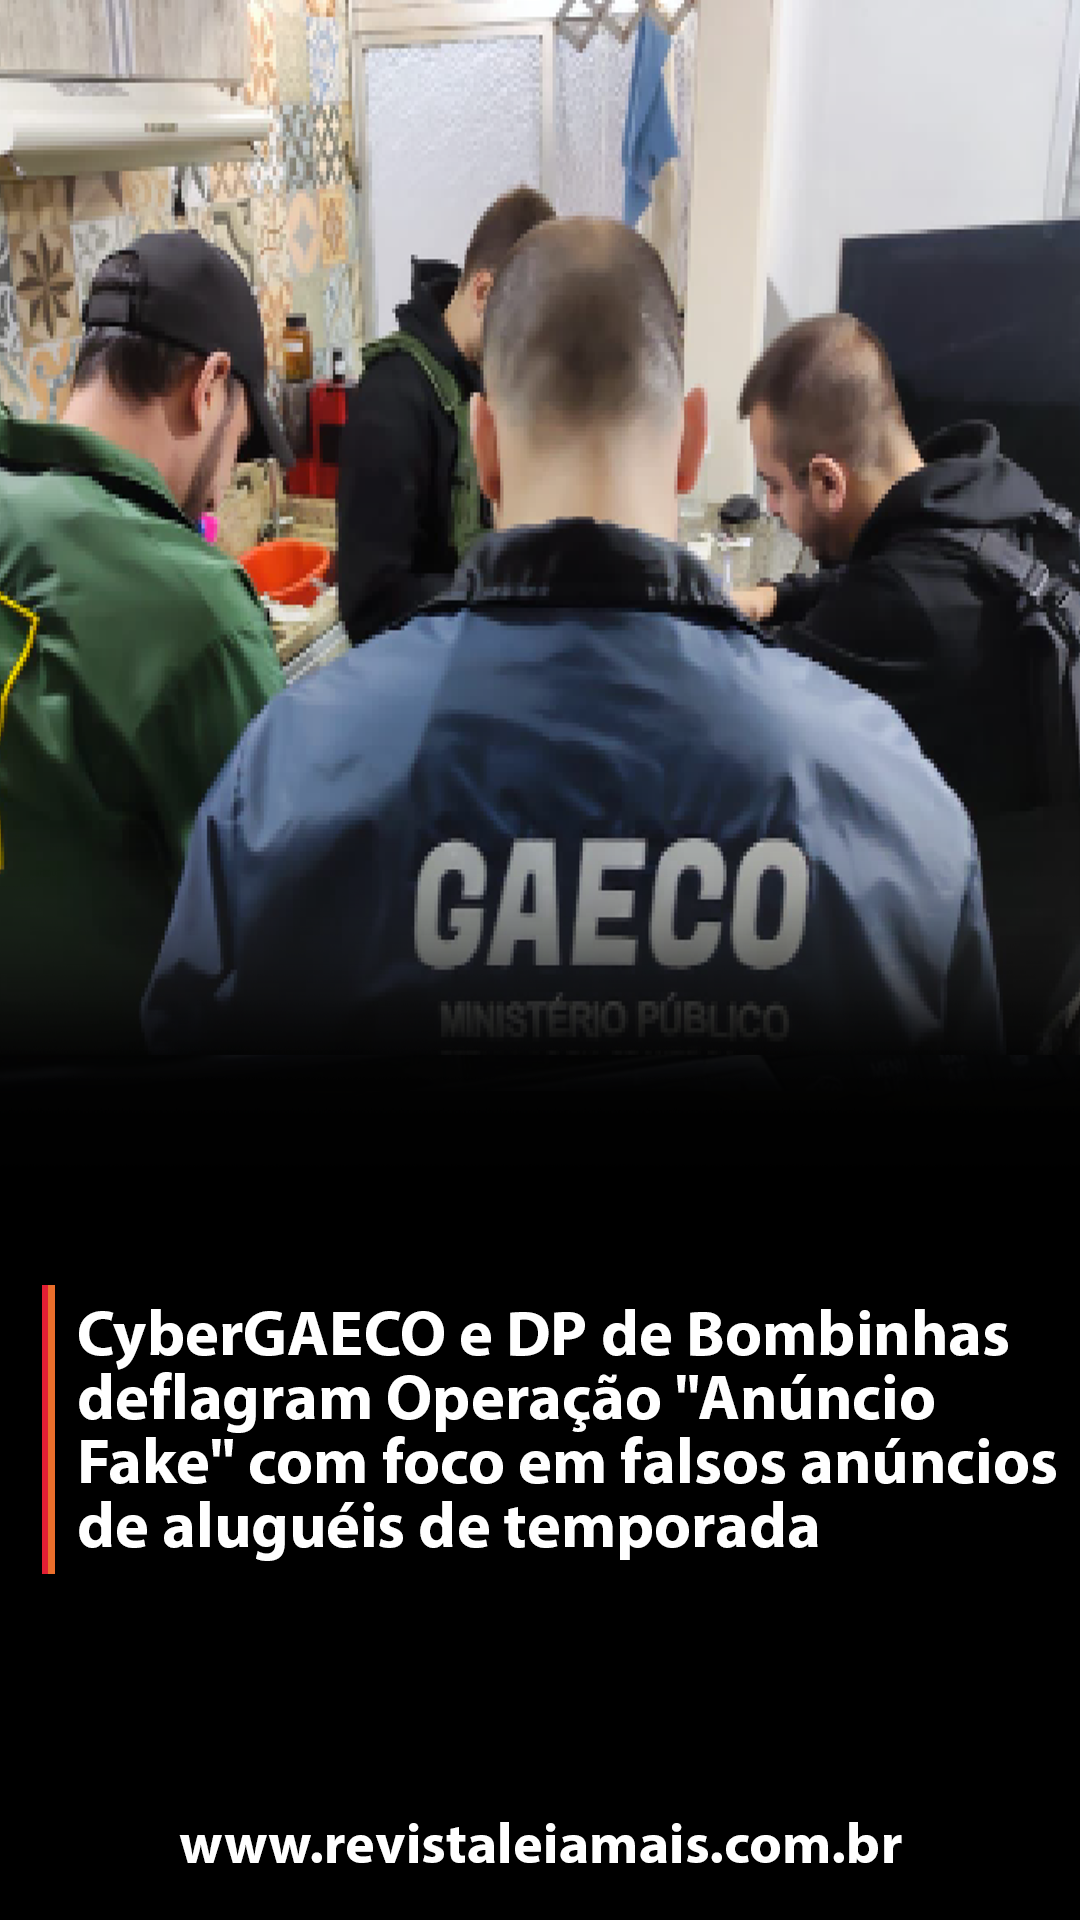 CyberGAECO e DP de Bombinhas deflagram Operação 